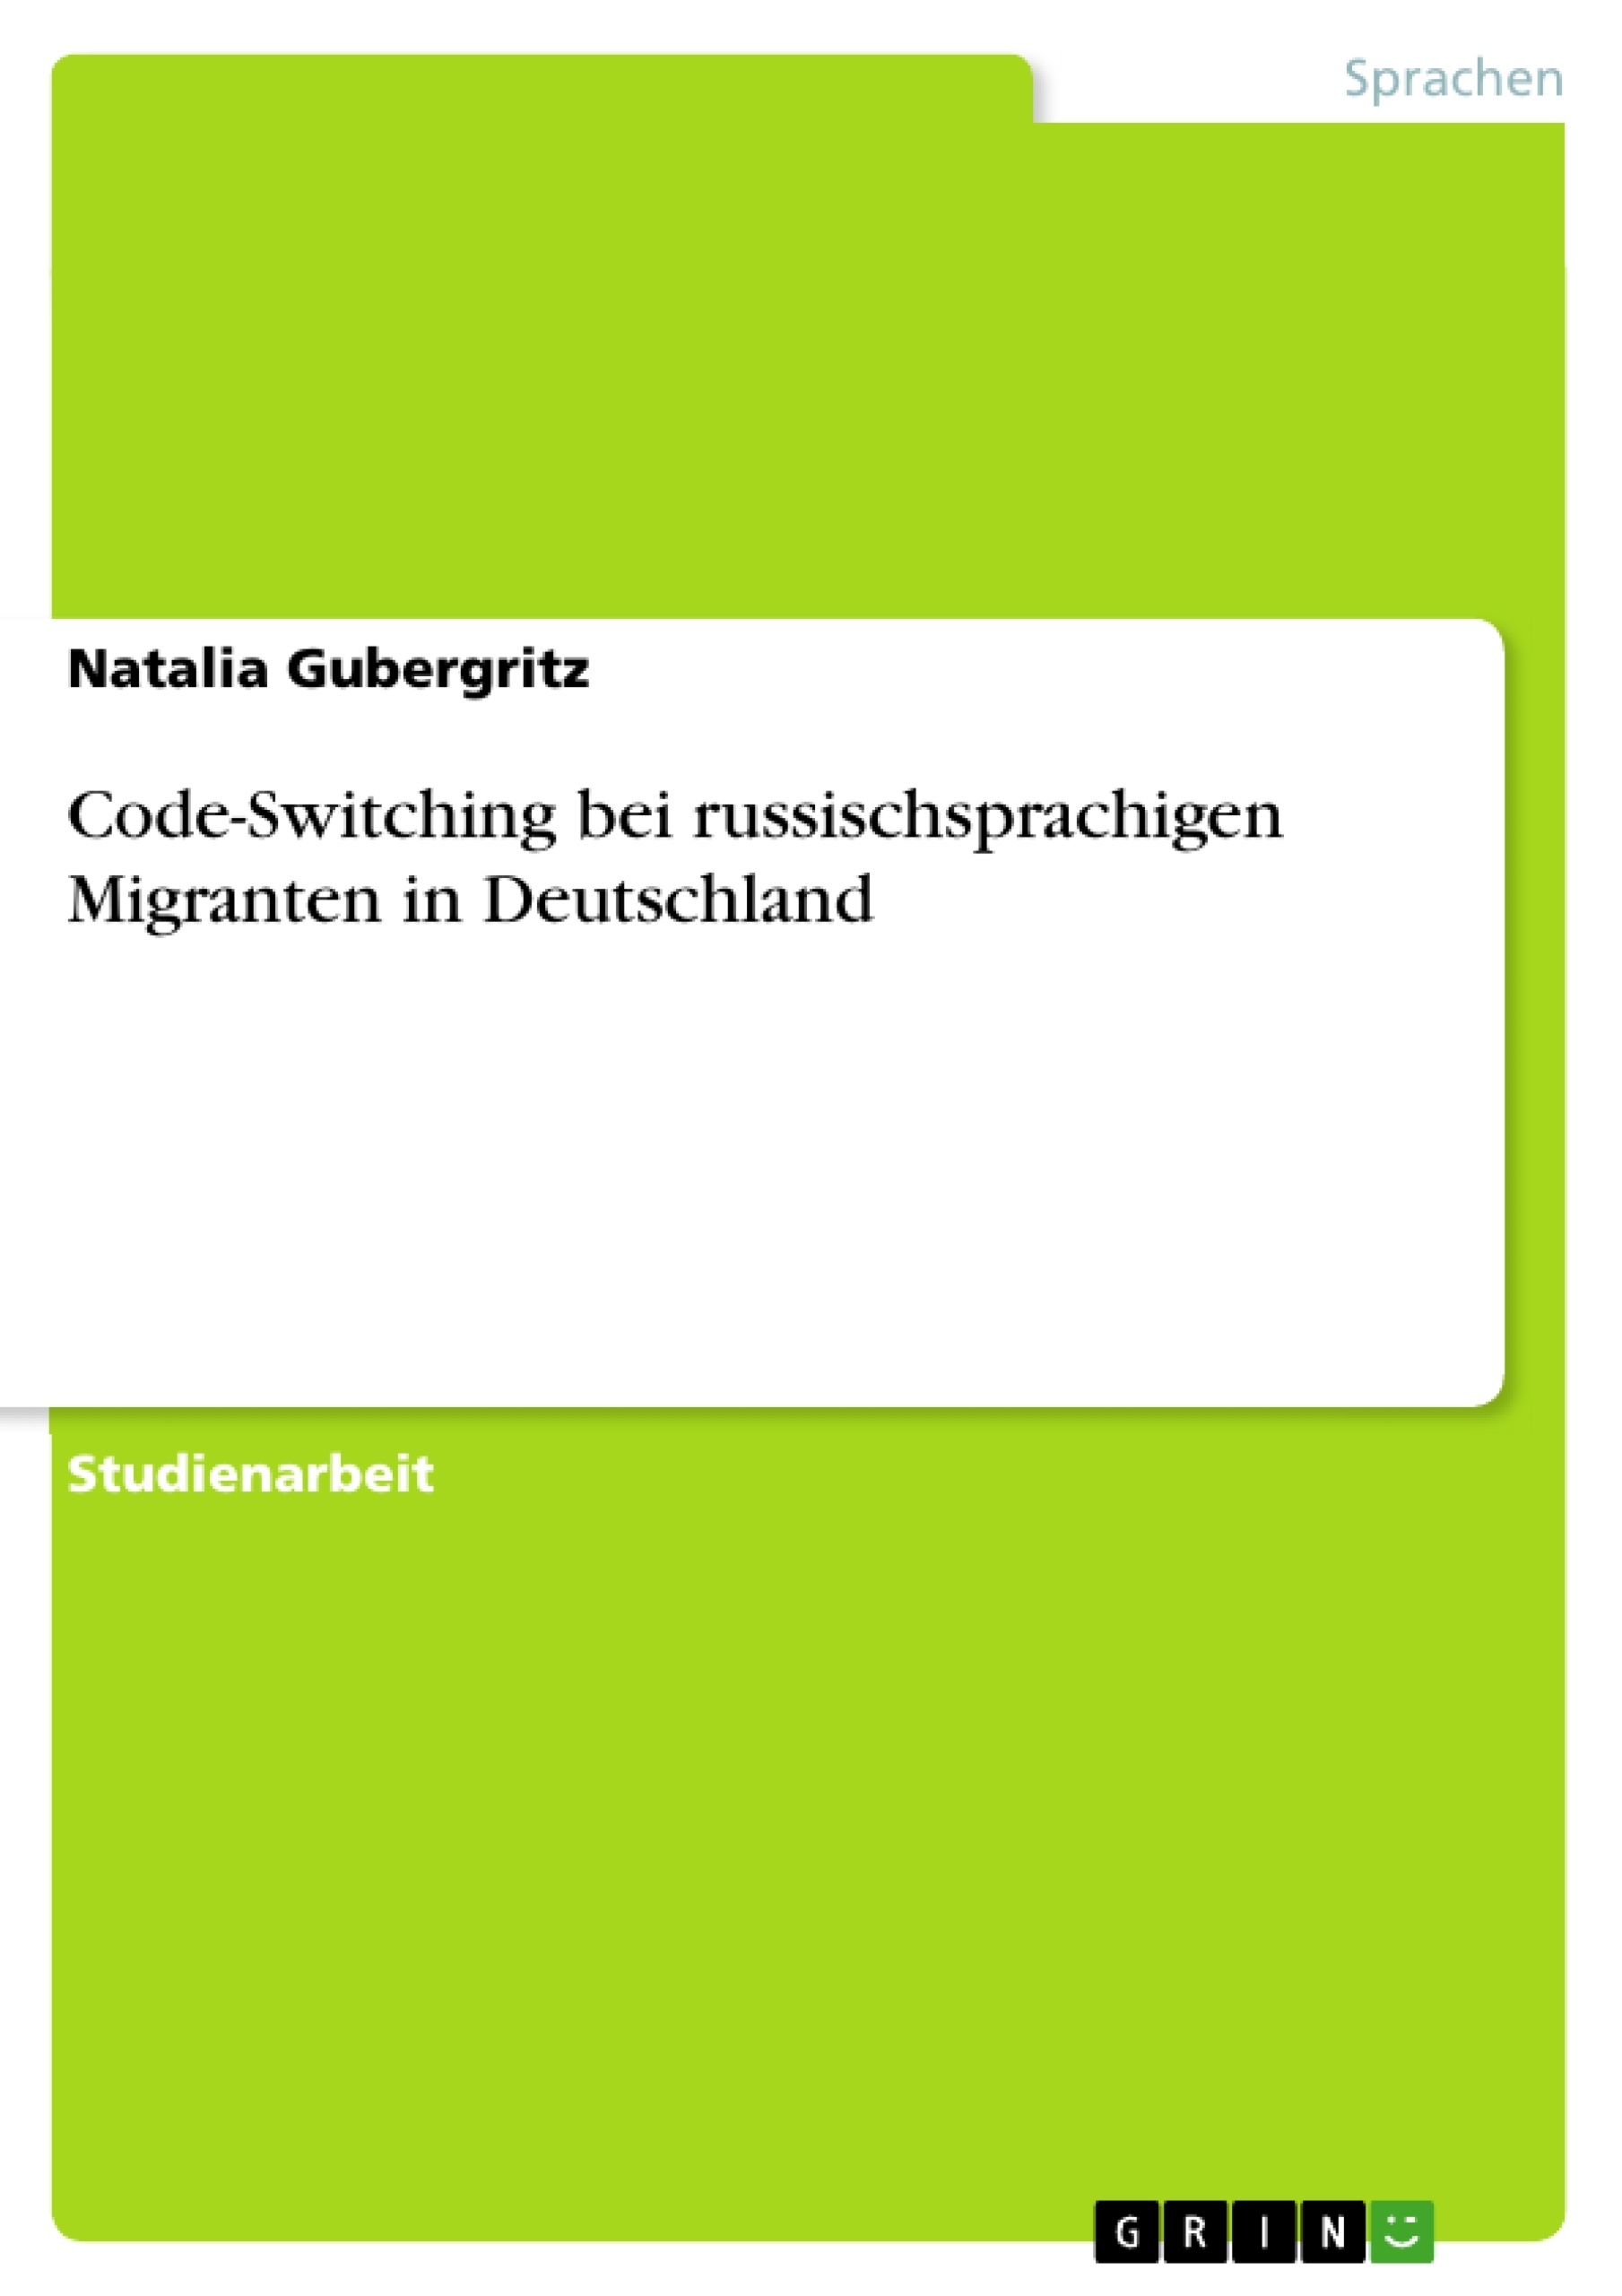 Title: Code-Switching bei russischsprachigen Migranten in Deutschland